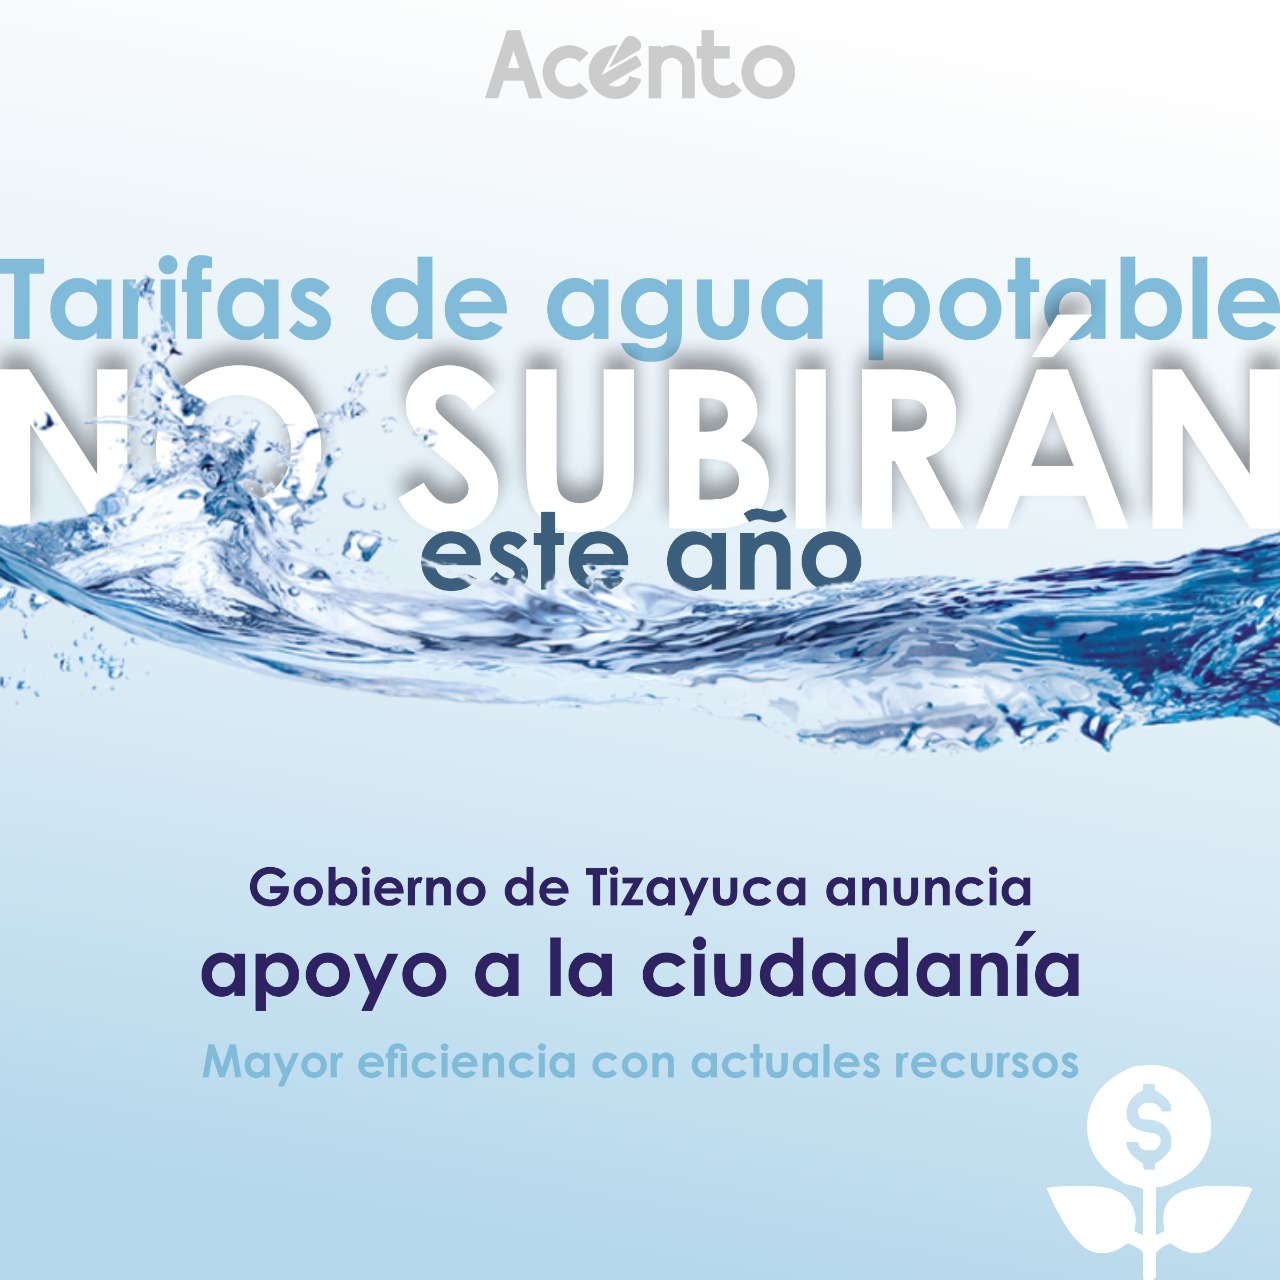 No habrá aumento de impuesto de agua potable en Tizayuca: Susana Ángeles.